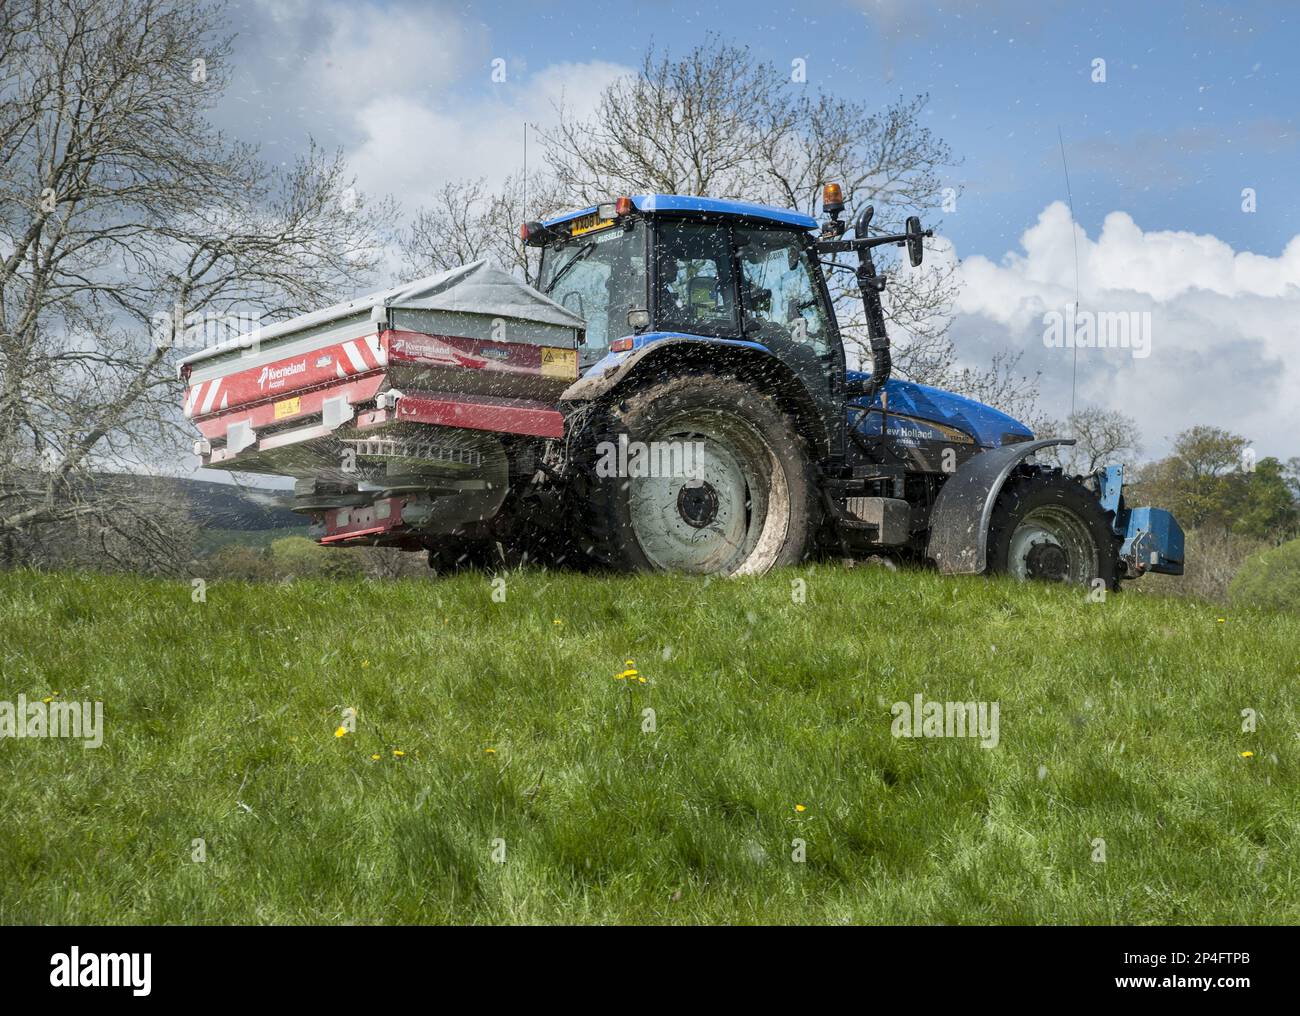 Tracteur avec épandeur, épandage d'engrais granulé sur les prairies, Castle Bolton, Redmire, North Yorkshire, Angleterre, Royaume-Uni Banque D'Images